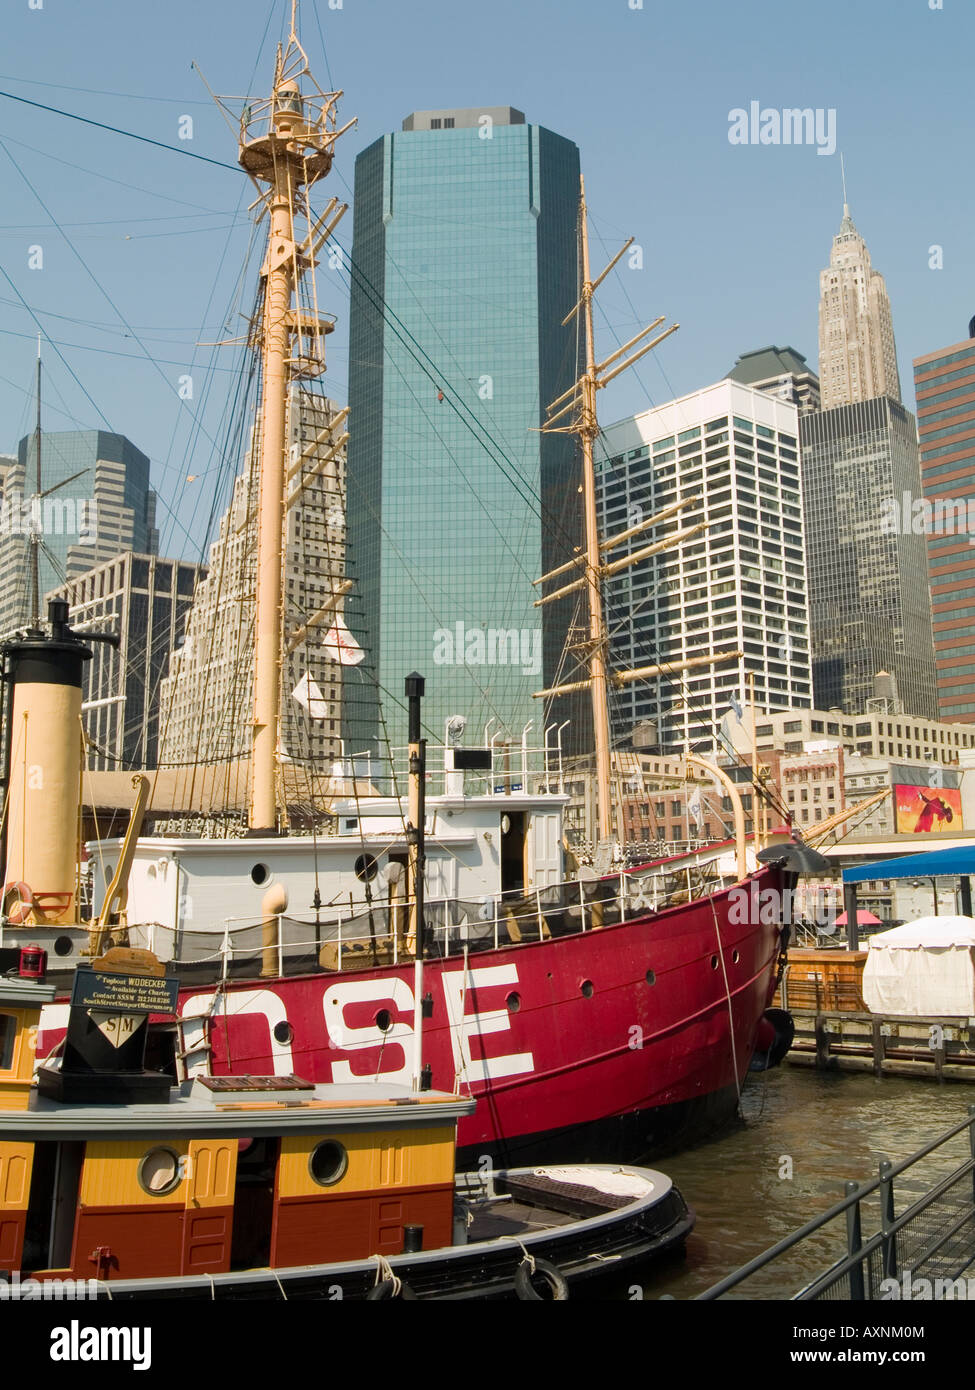 Le contraste entre les anciens bateaux et les gratte-ciel modernes dans la région de South Street Seaport de New York USA Banque D'Images